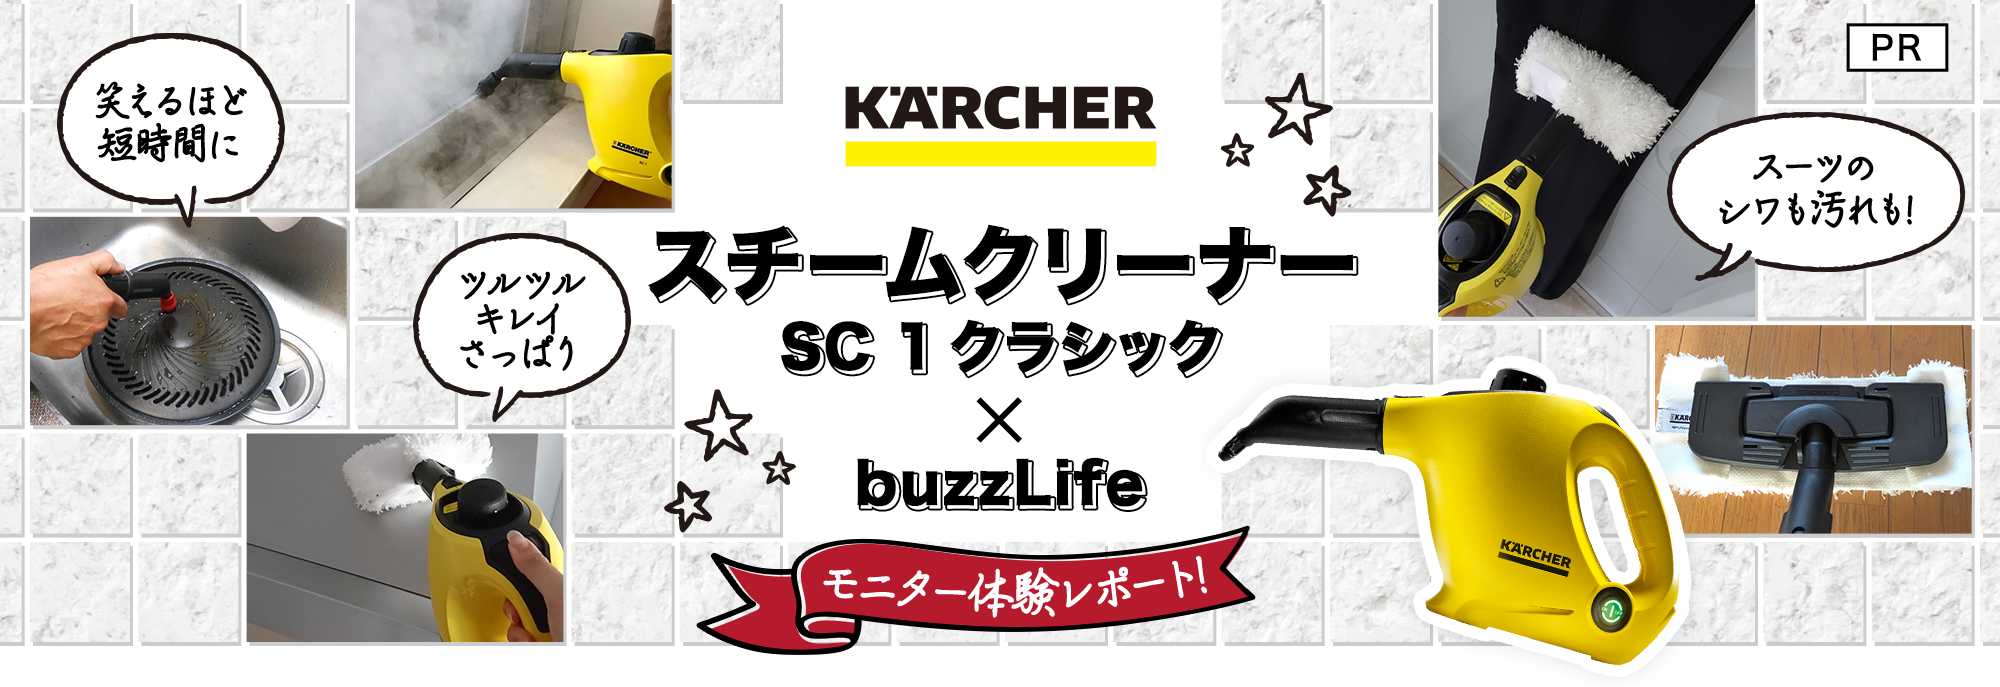 ケルヒャー スチームクリーナー SC1クラシック×buzzLife モニター体験レポート!